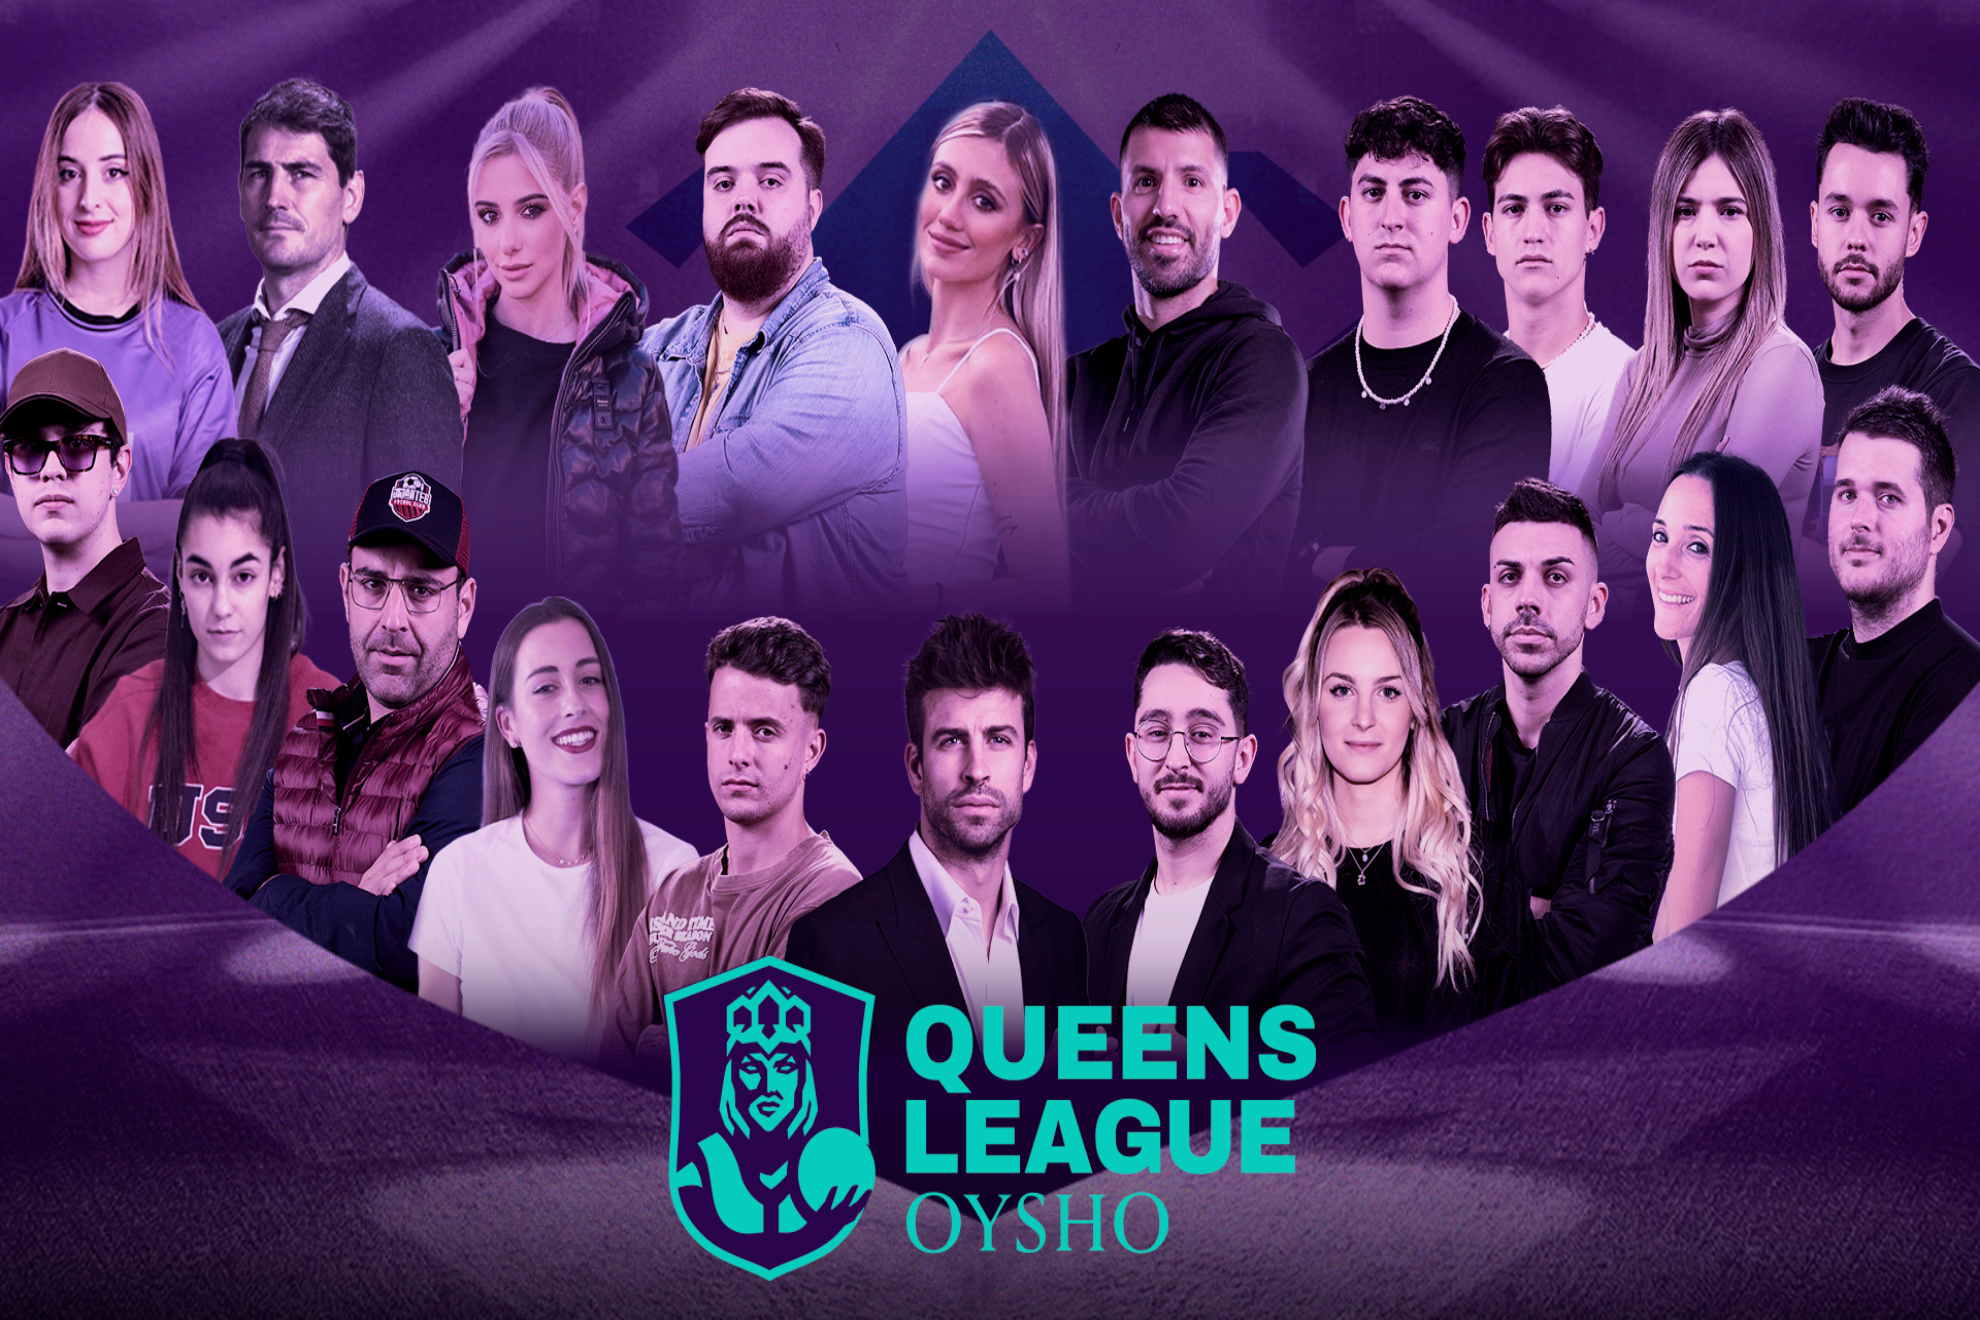 Nace la Queens League Oysho: llega el momento de las reinas del ftbol | Queens League